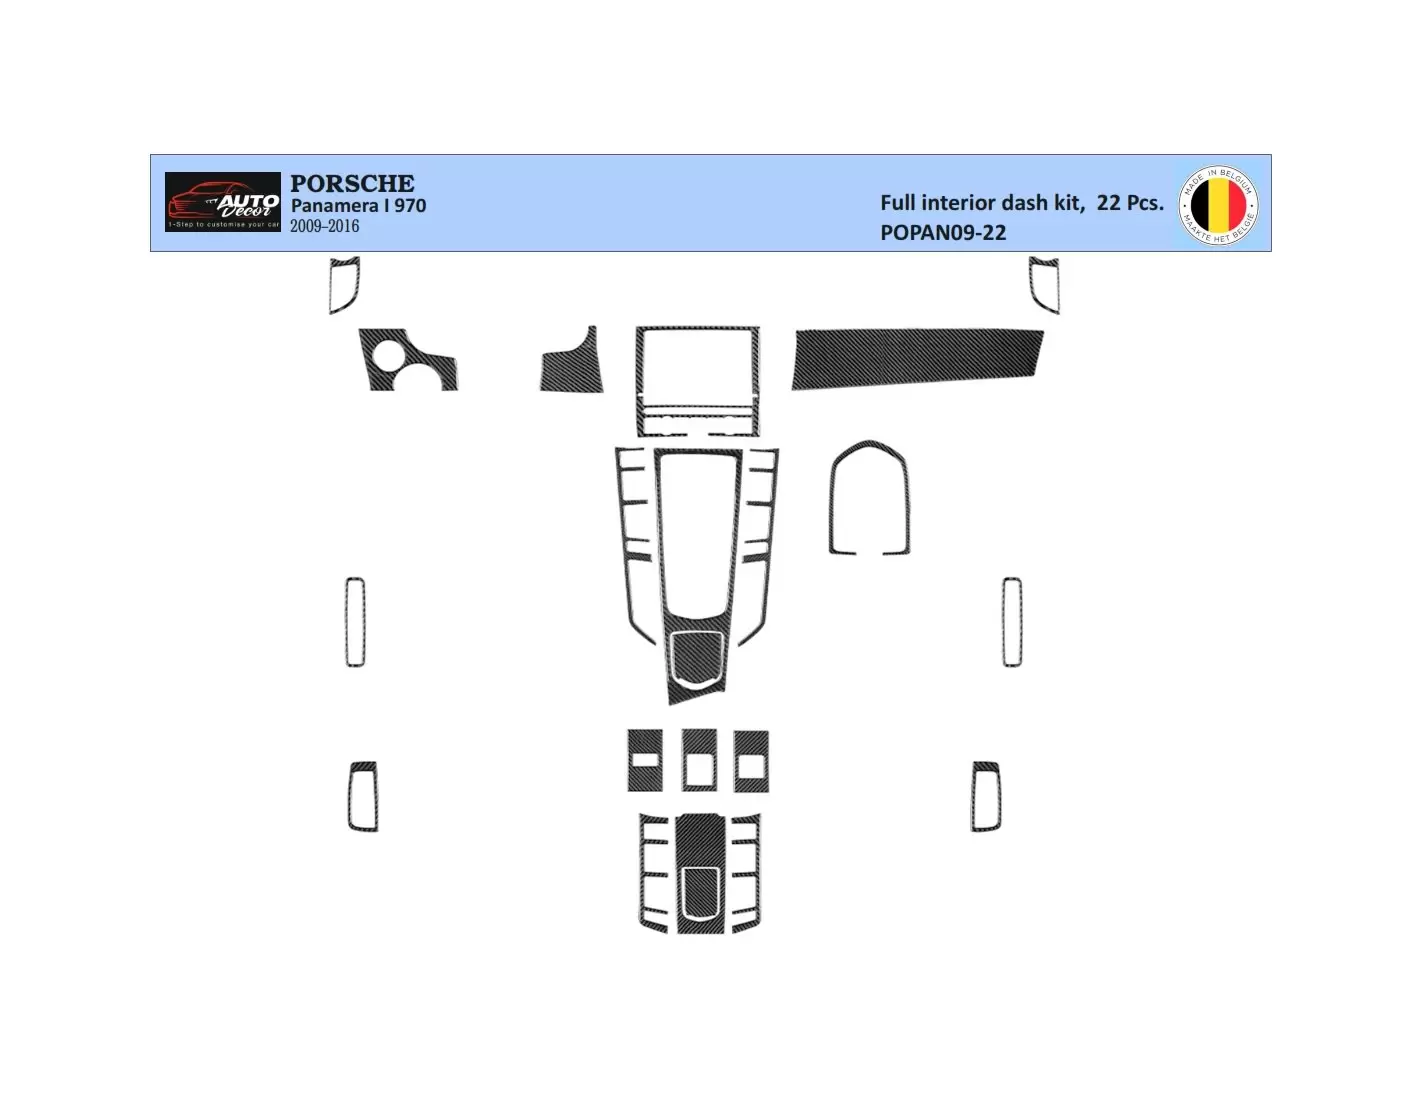 Porsche Panamera 2009-2015 Décoration de tableau de bord 14 -Prt - 1 - habillage decor de tableau de bord